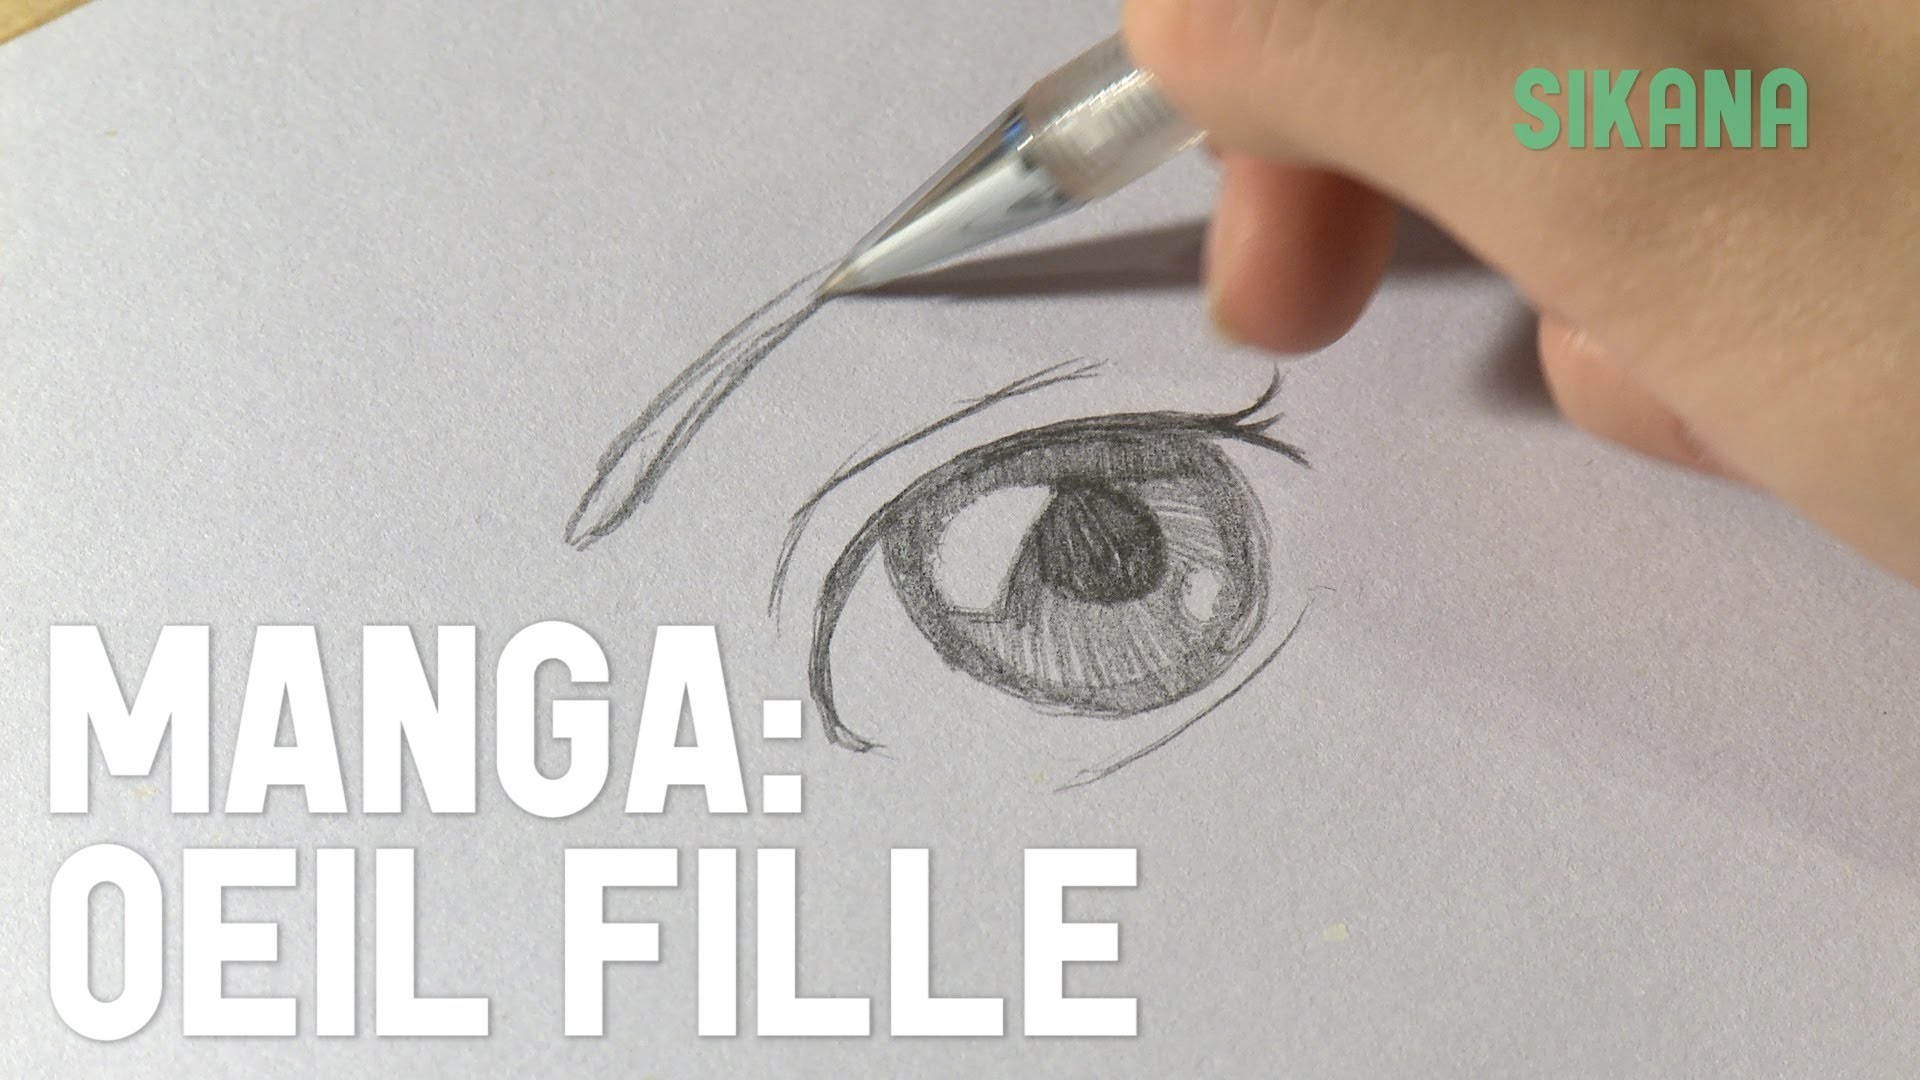 Manga : Dessiner un oeil de fille - HD